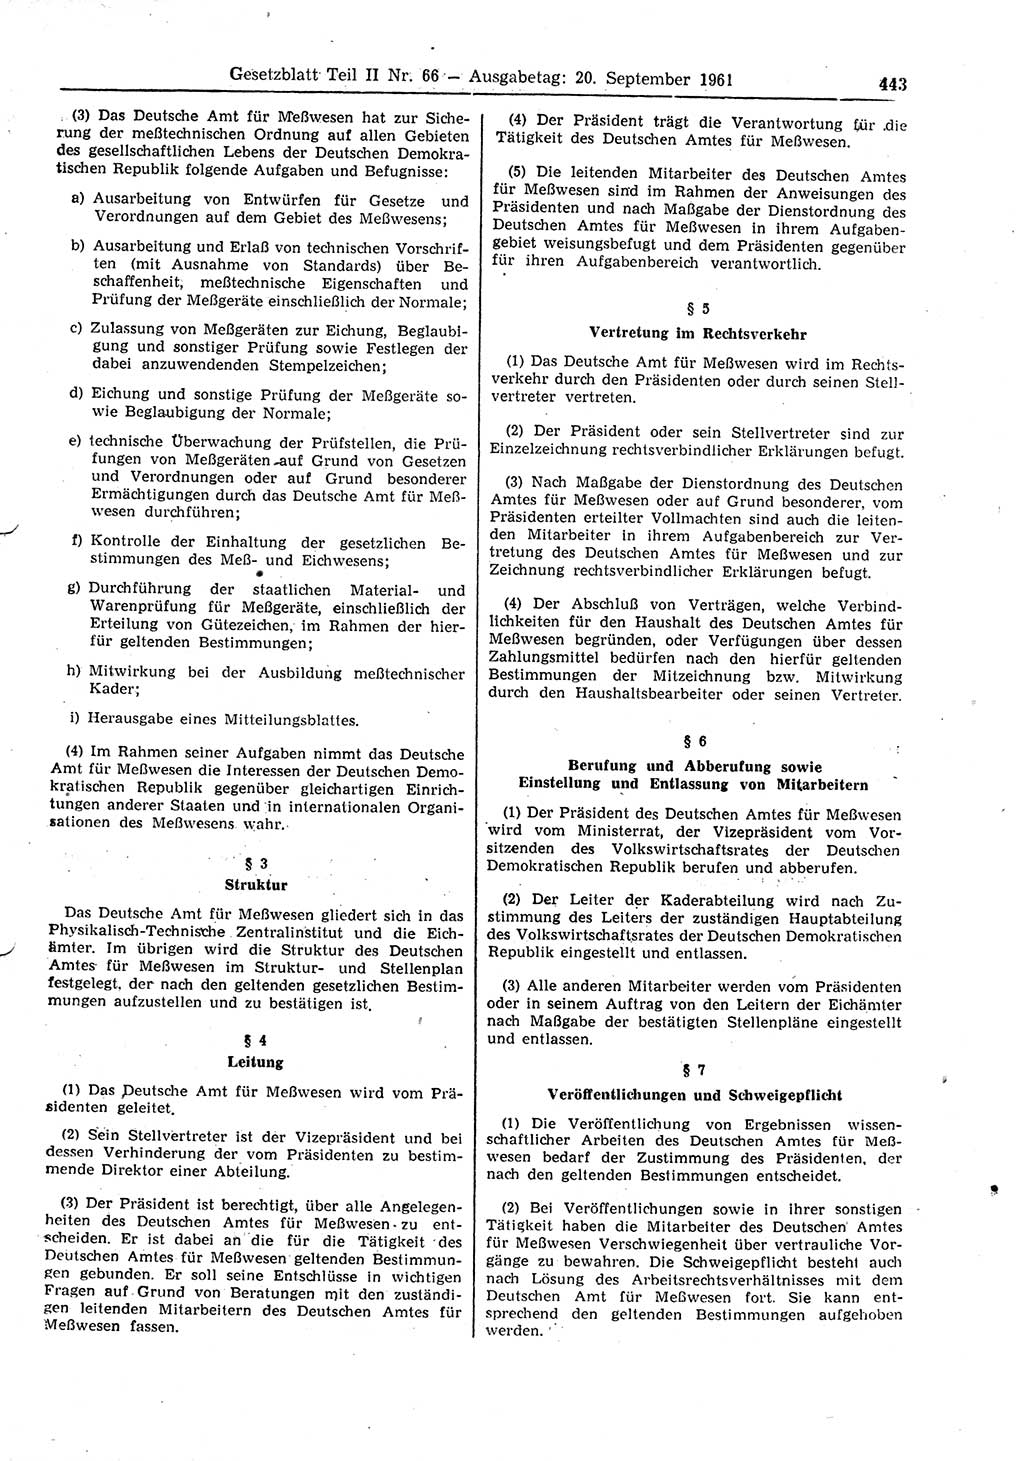 Gesetzblatt (GBl.) der Deutschen Demokratischen Republik (DDR) Teil ⅠⅠ 1961, Seite 443 (GBl. DDR ⅠⅠ 1961, S. 443)